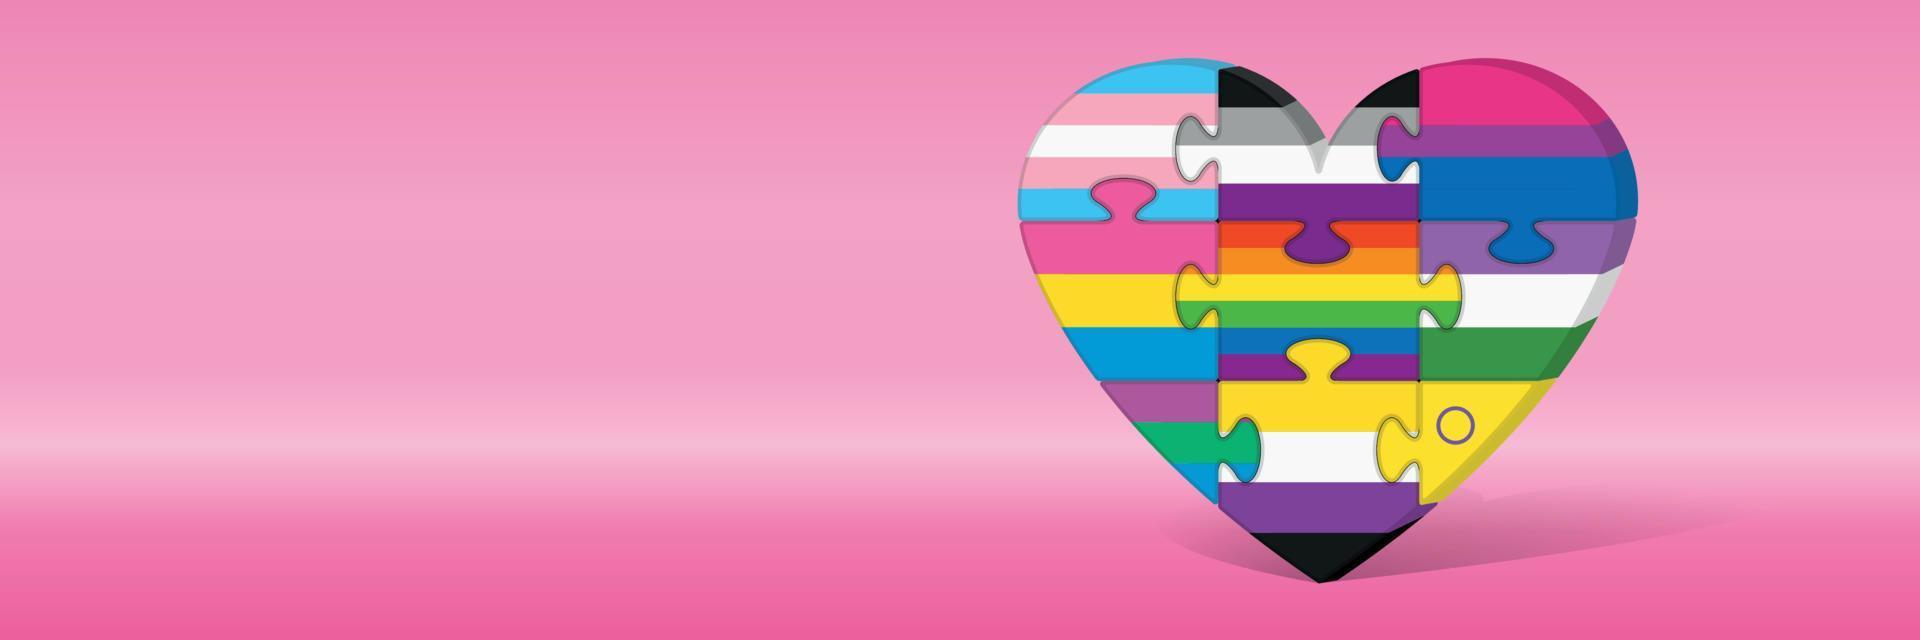 9 bandeiras do orgulho dentro de peças de quebra-cabeça formando um coração contra fundo rosa. imagem vetorial vetor